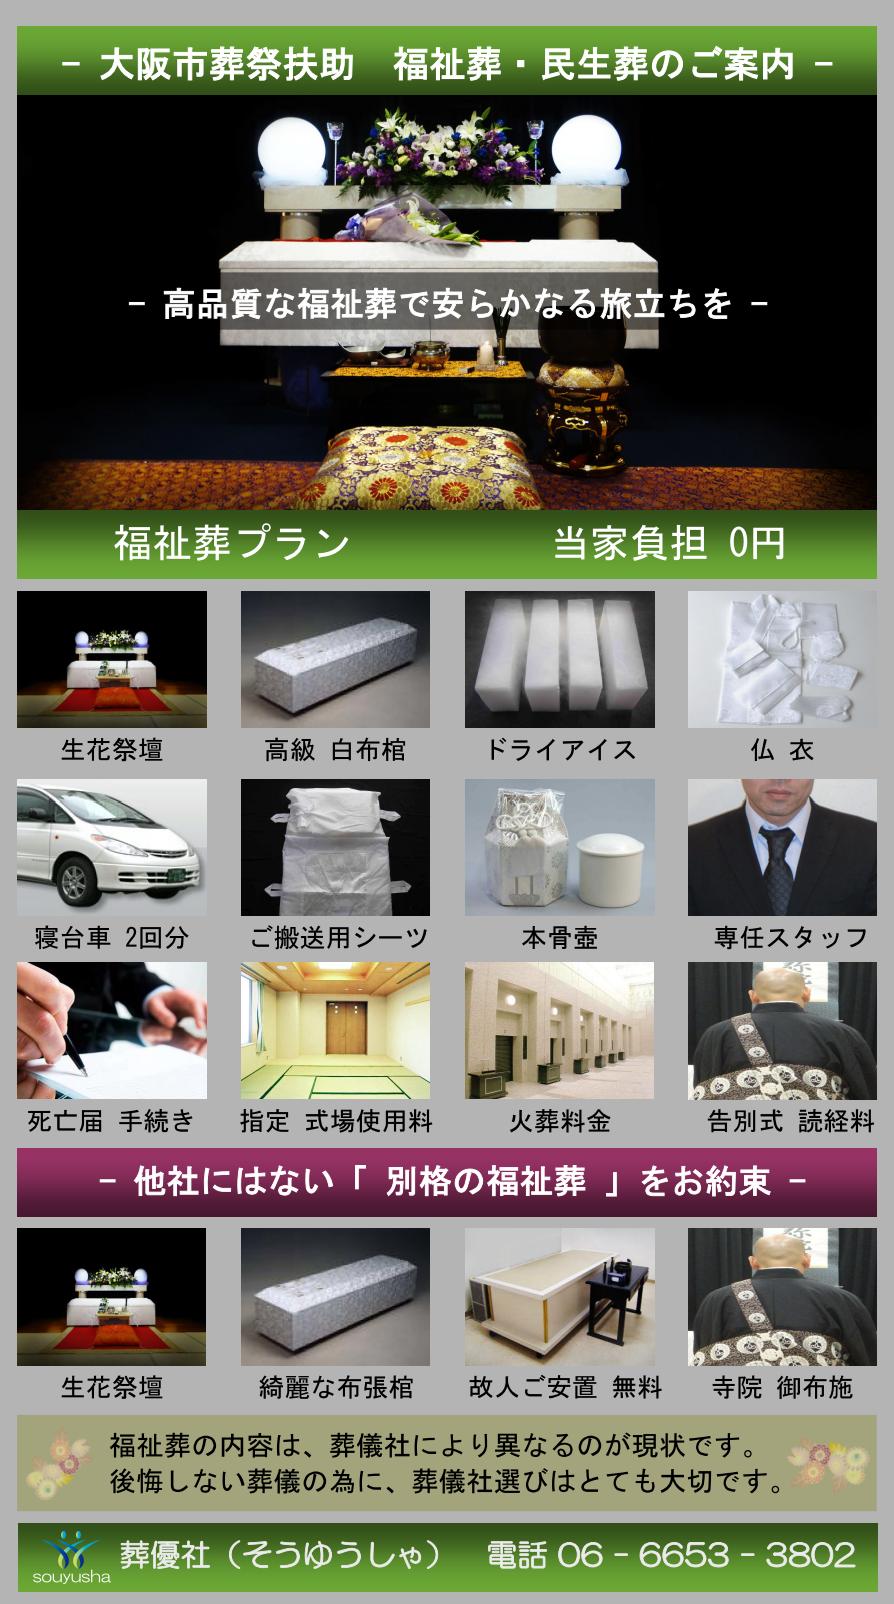 大阪市 此花区での福祉葬、生活保護者のお葬式のご案内